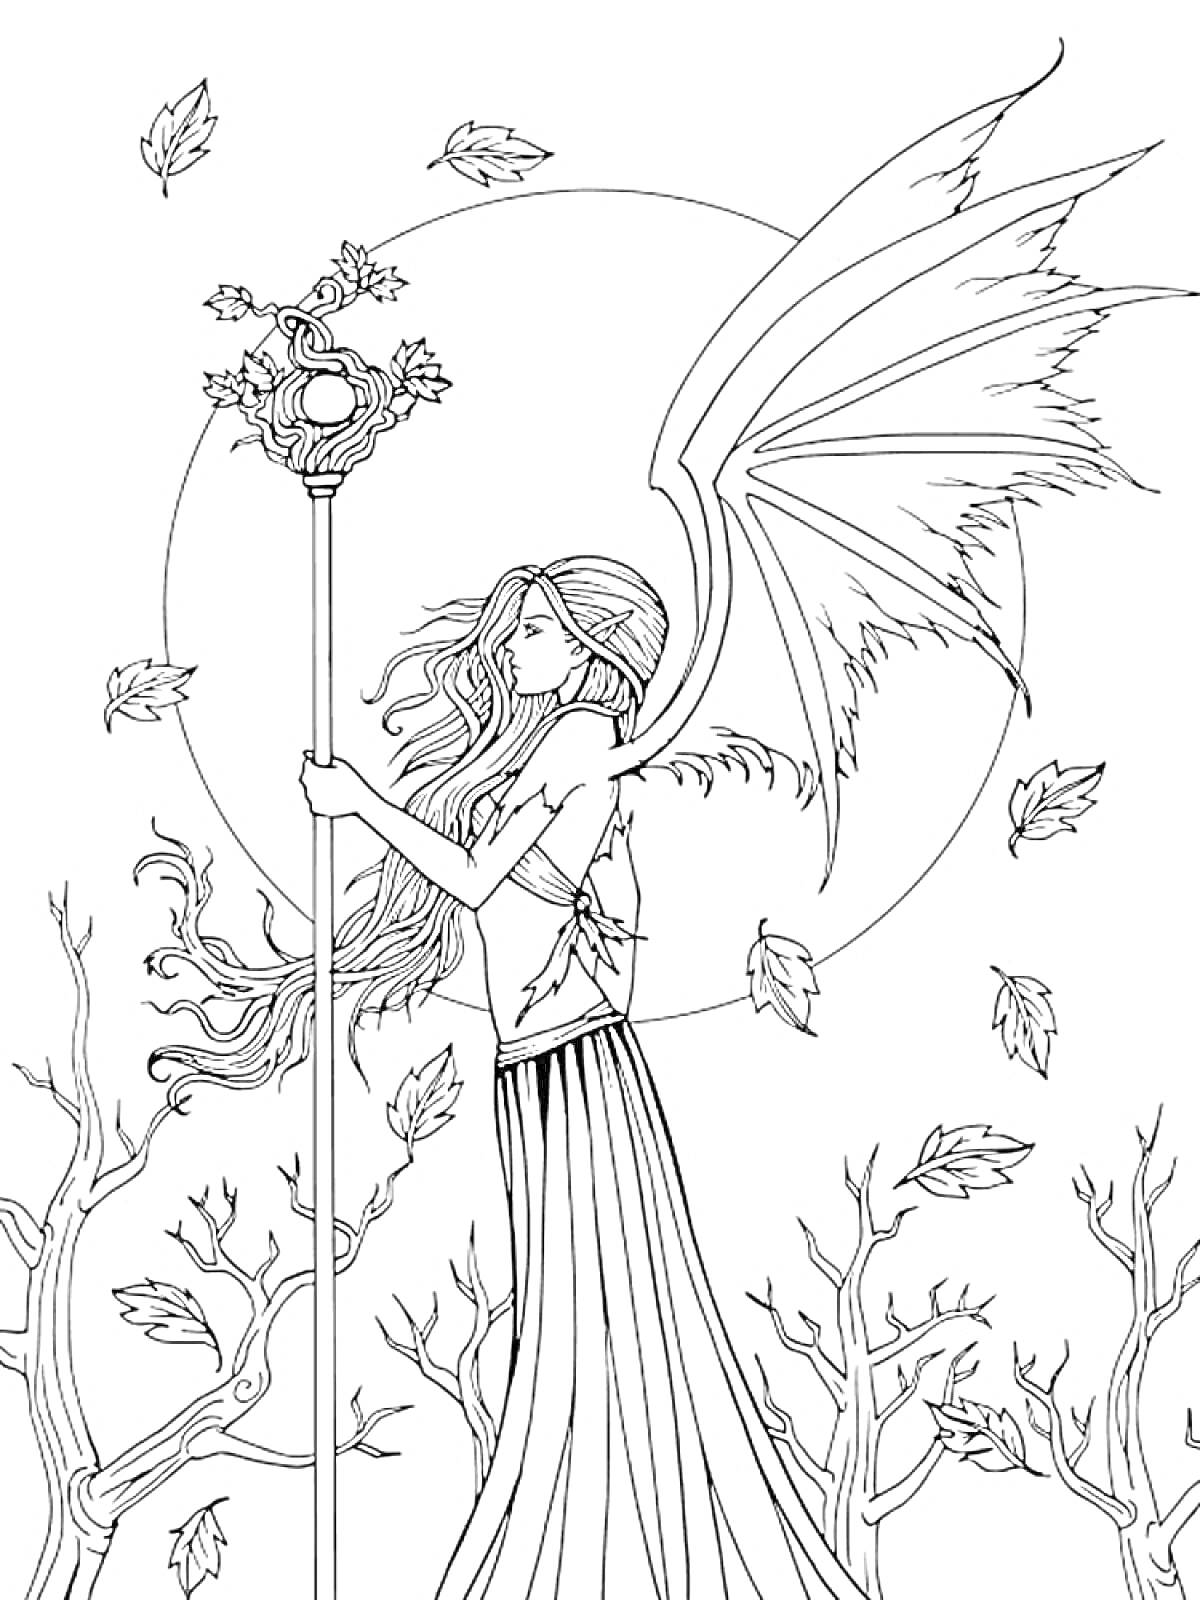 Фея с длинными волосами, крыльями и жезлом на фоне полной луны, окружённая деревьями и падающими листьями